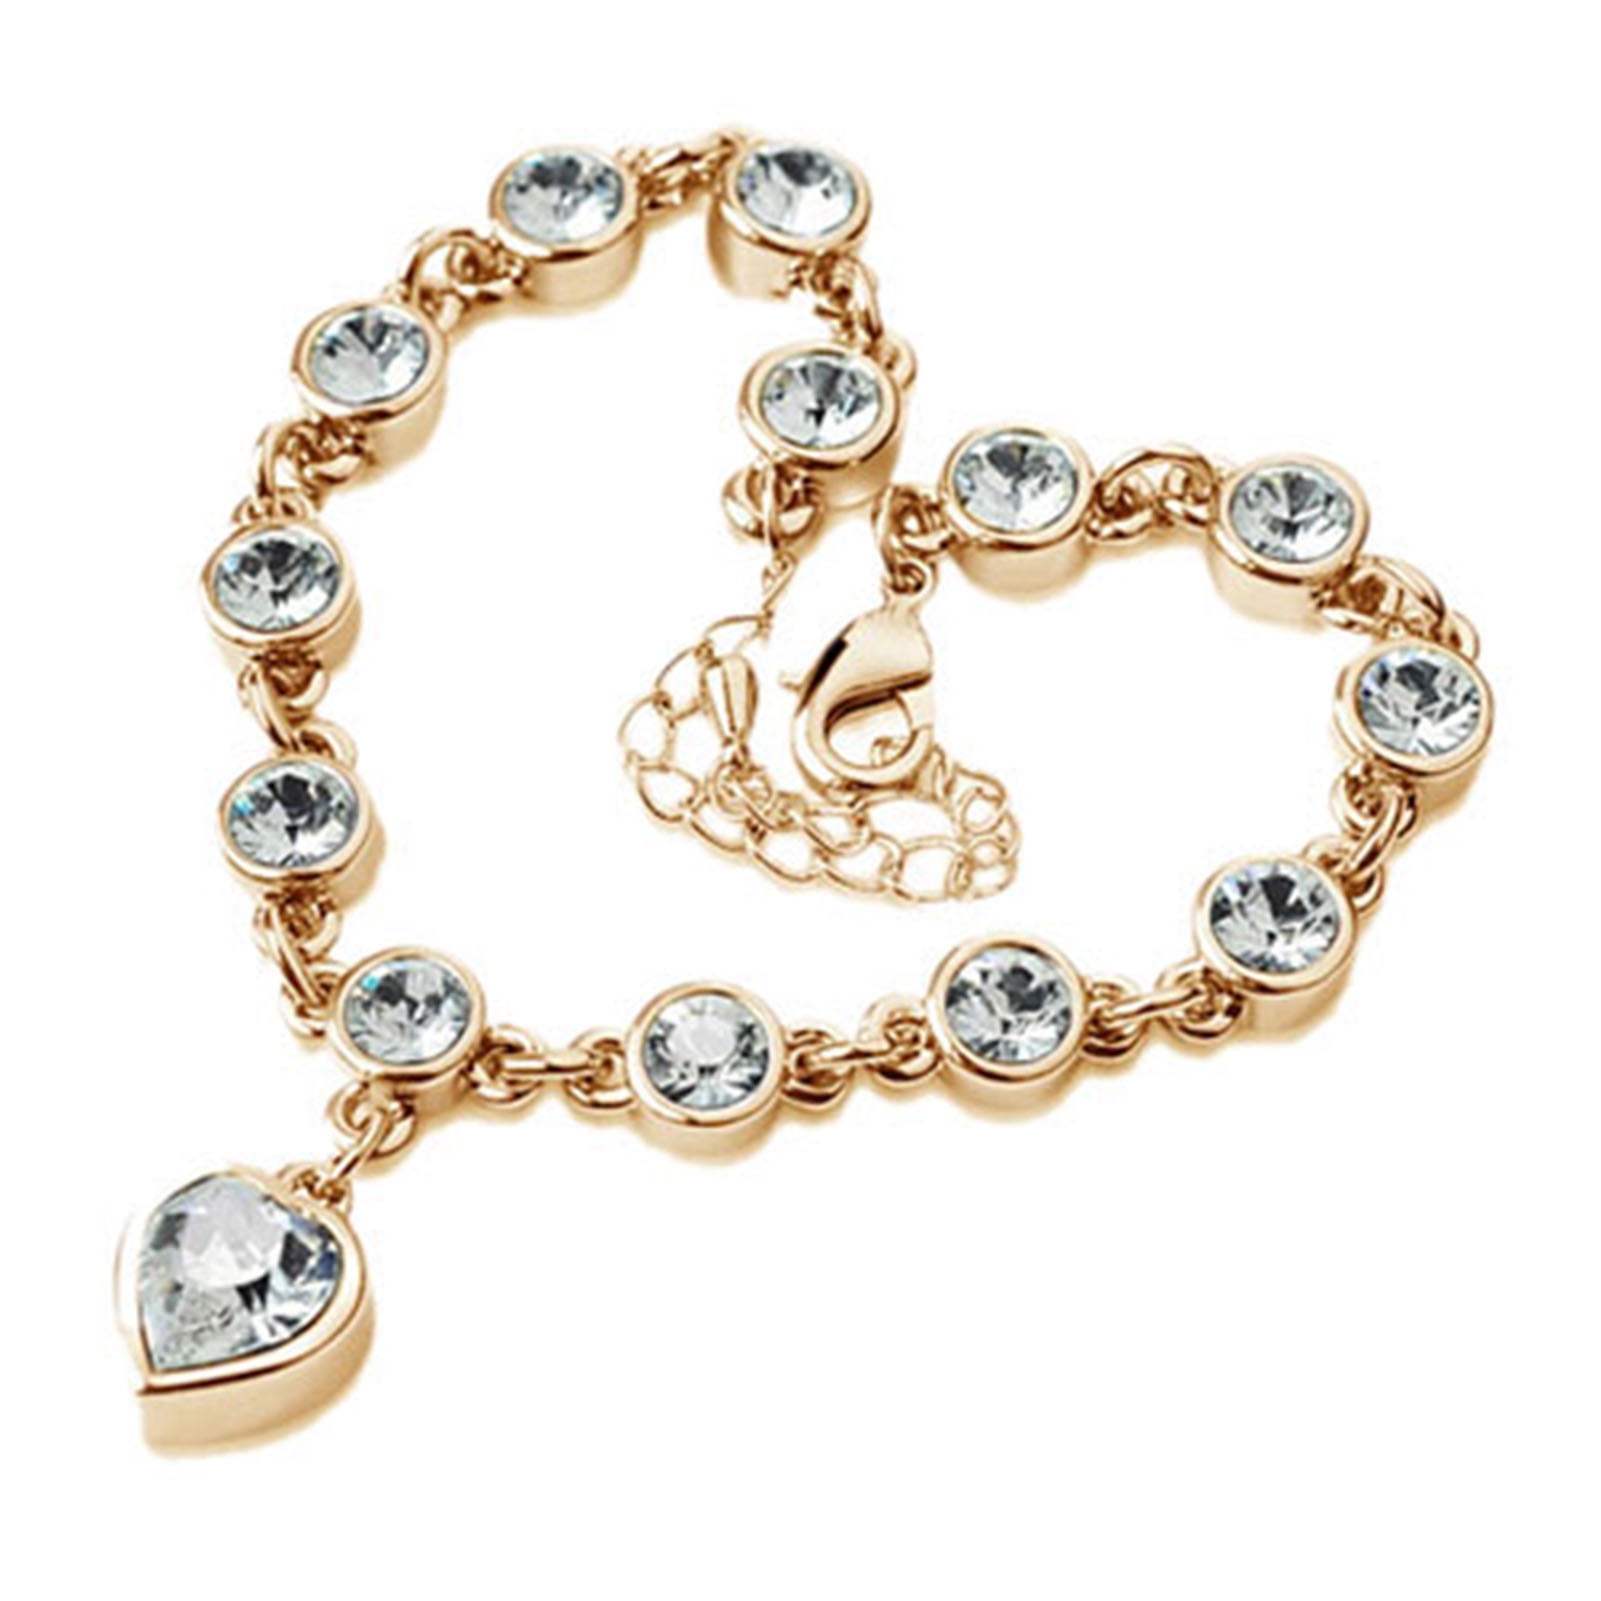 Grandest Birch Bracelet Heart Shape Rhinestone Design Alloy Women Chain  Bracelets for Daily Wear Rhinestone,Alloy Gold 